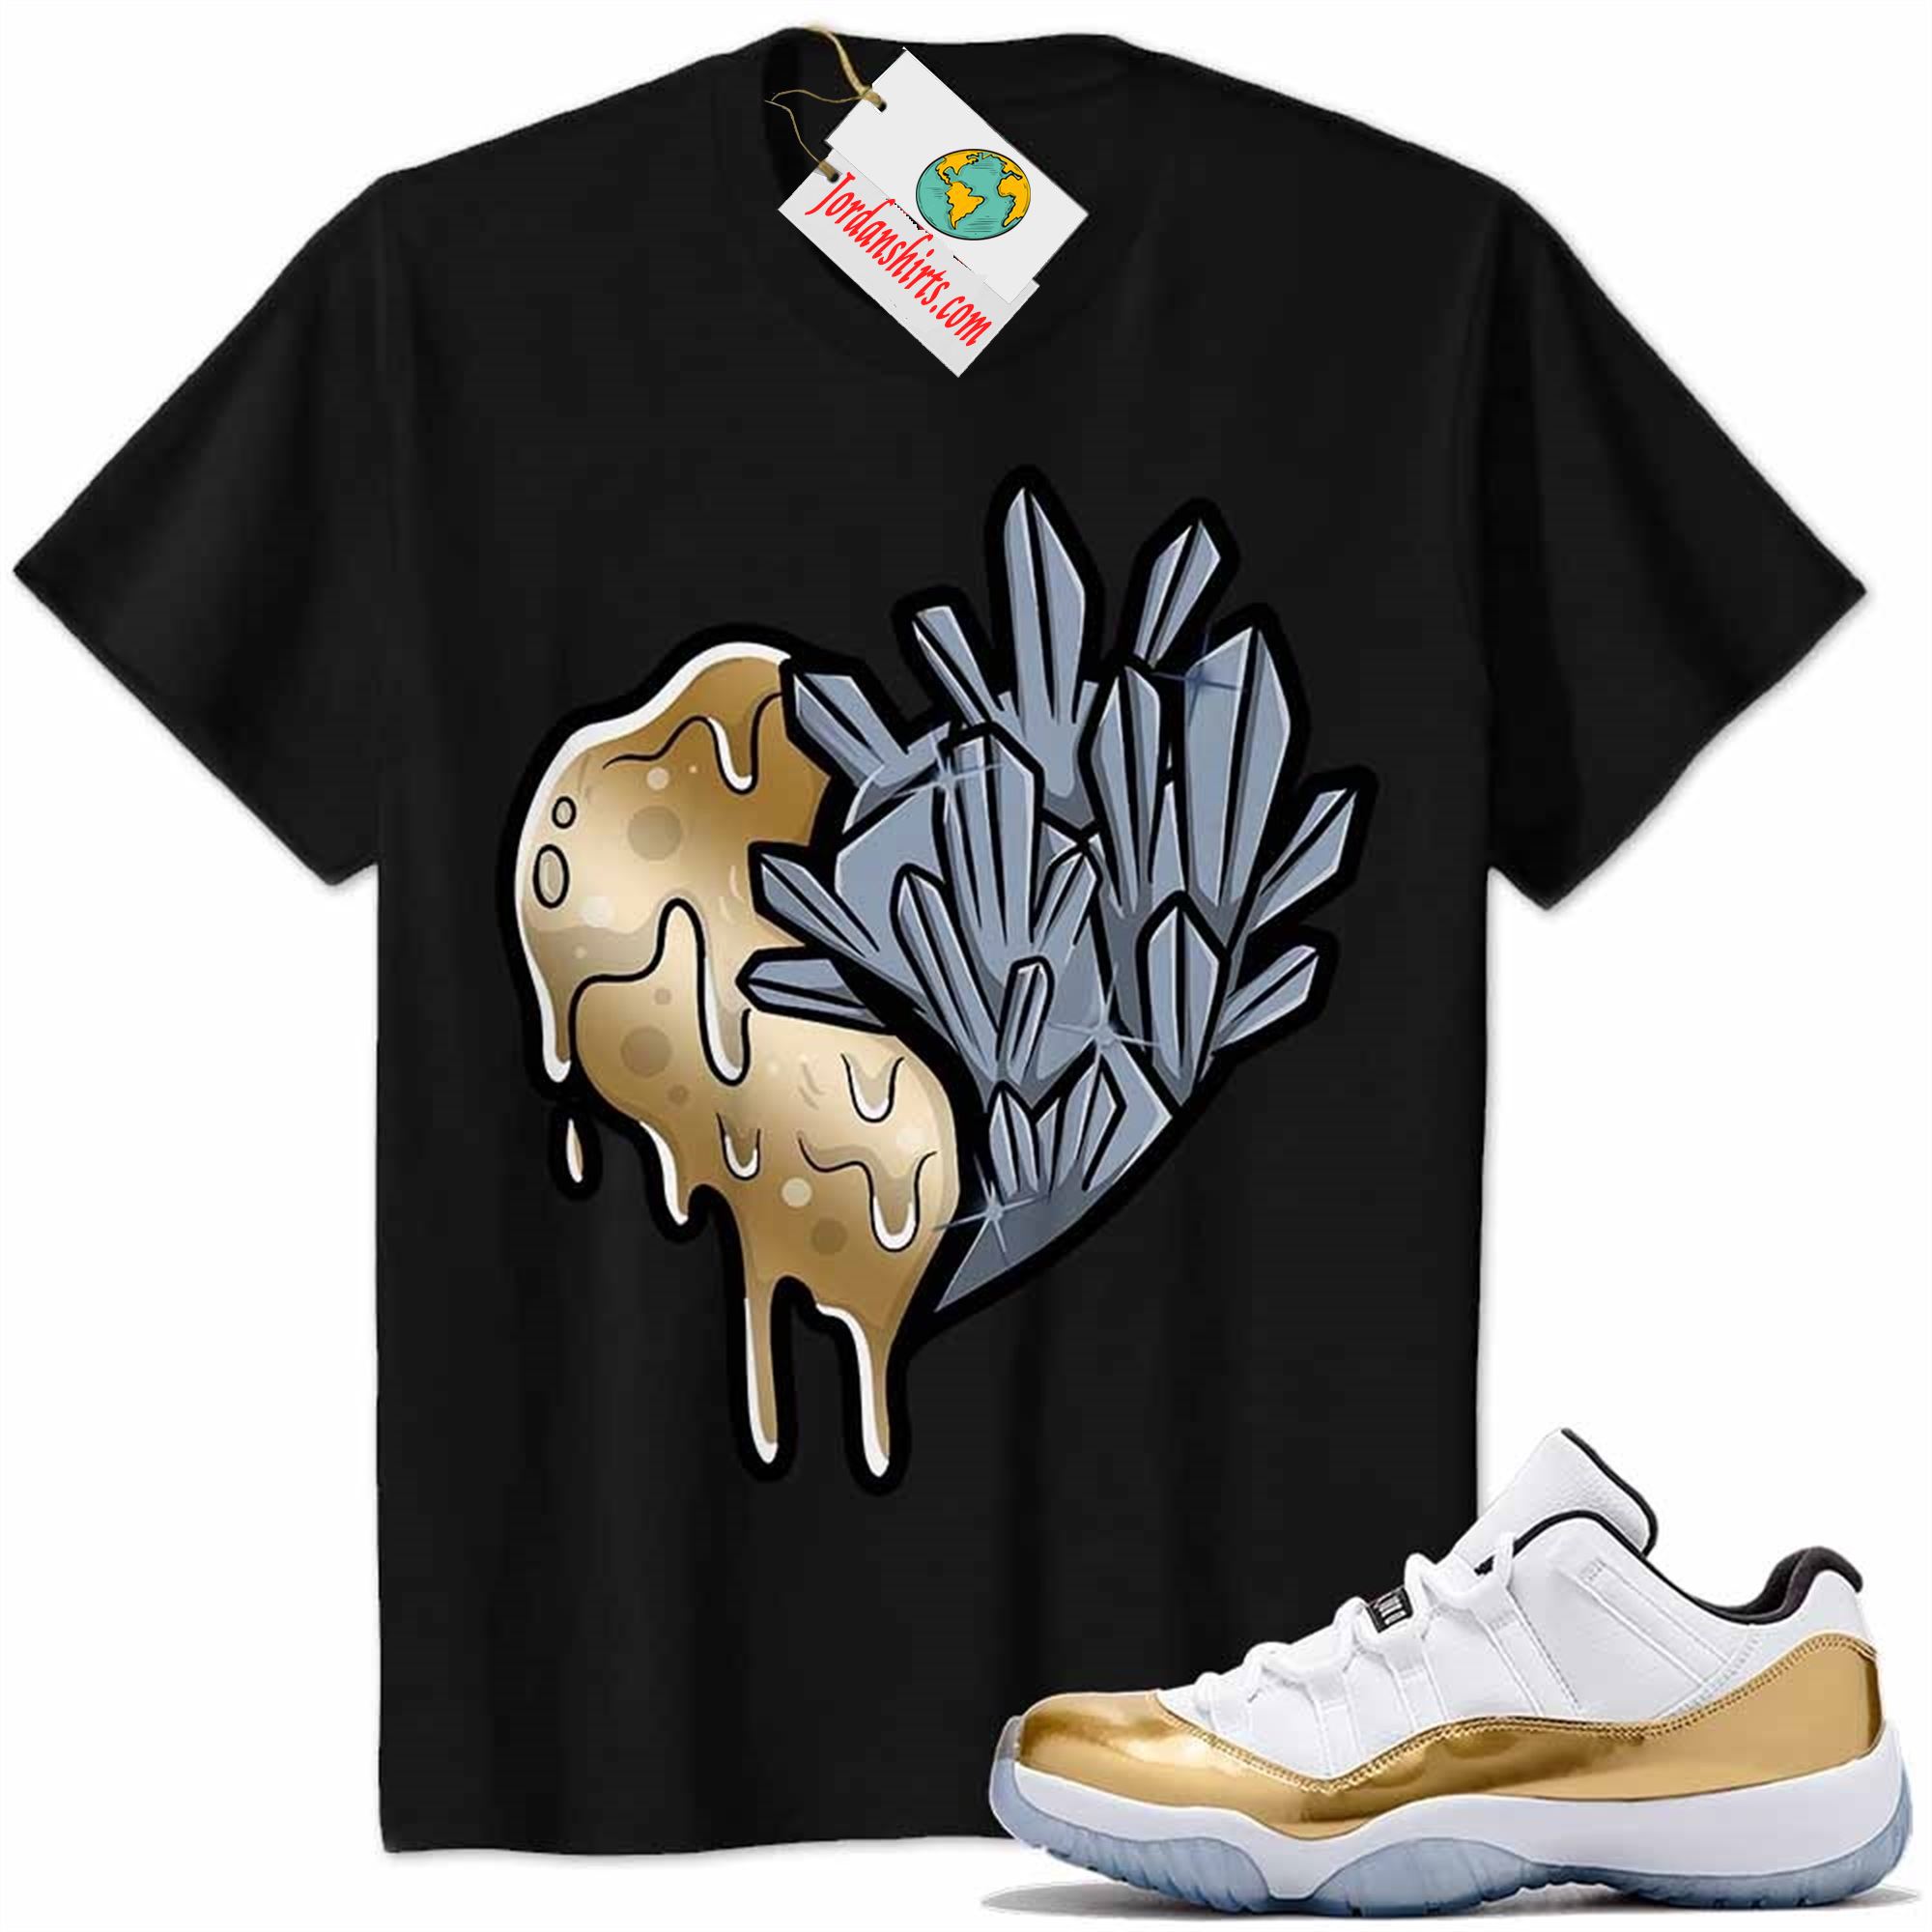 Jordan 11 Shirt, Crystal And Melt Heart Black Air Jordan 11 Metallic Gold 11s Size Up To 5xl